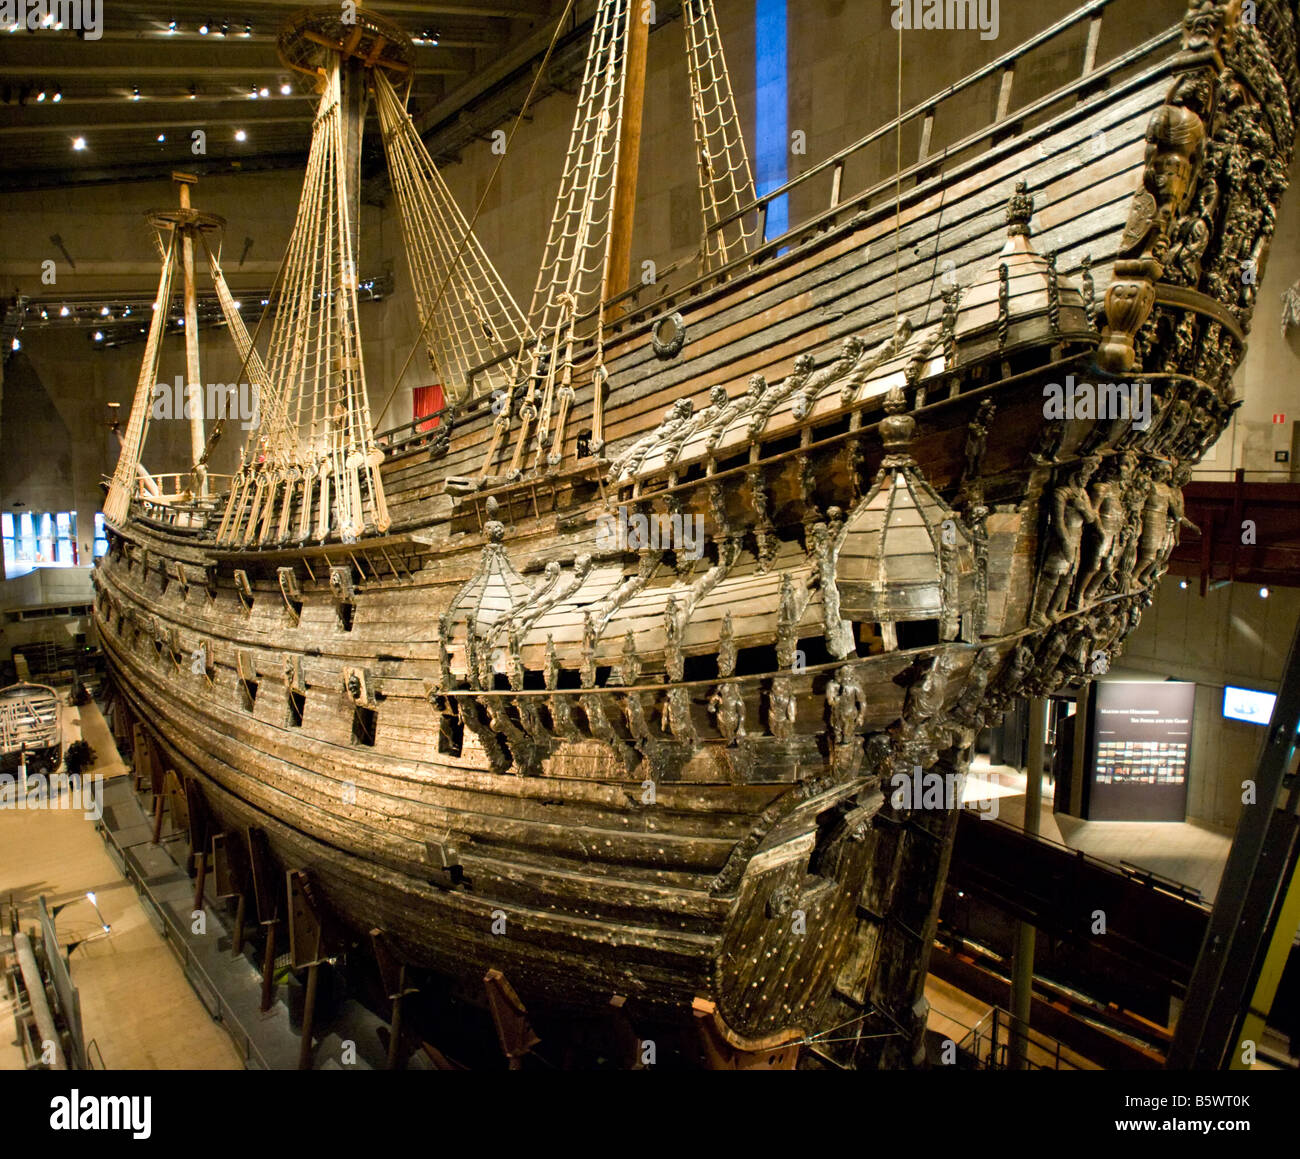 Le bateau de voile préservé Vasa est exposé au Vasamuseum de Stockholm, en Suède Banque D'Images